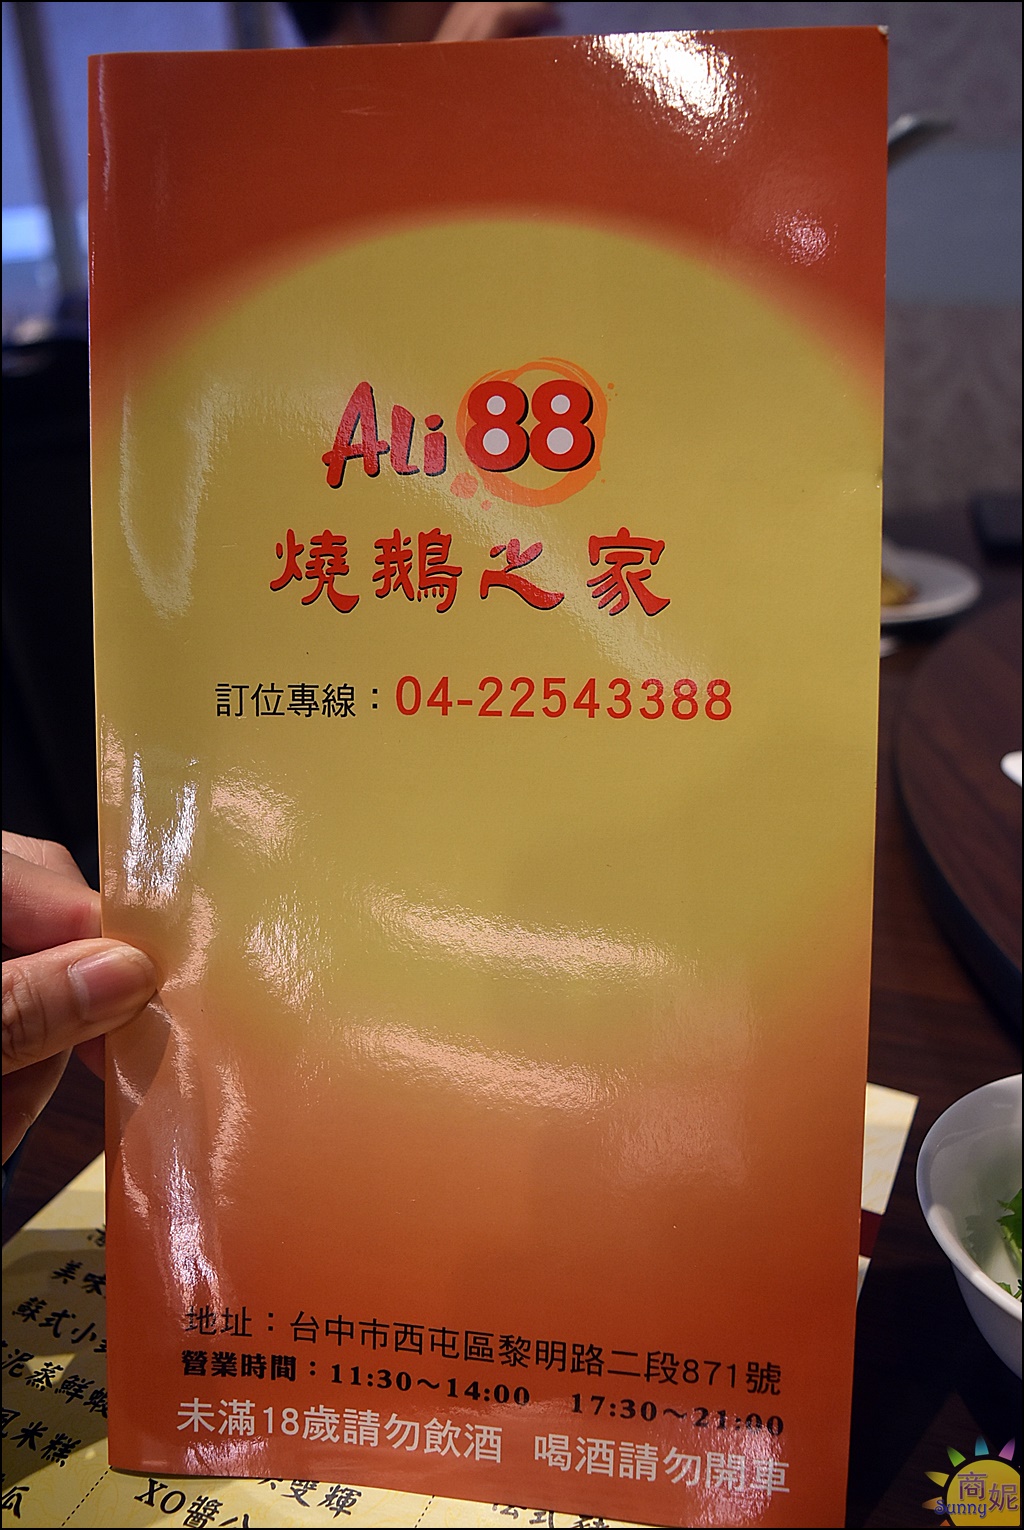 Ali88燒鵝之家| 台中超好吃燒鵝 香港老師傅手工製作 限量多汁招牌燒鵝、鵝油飯一吃就愛上